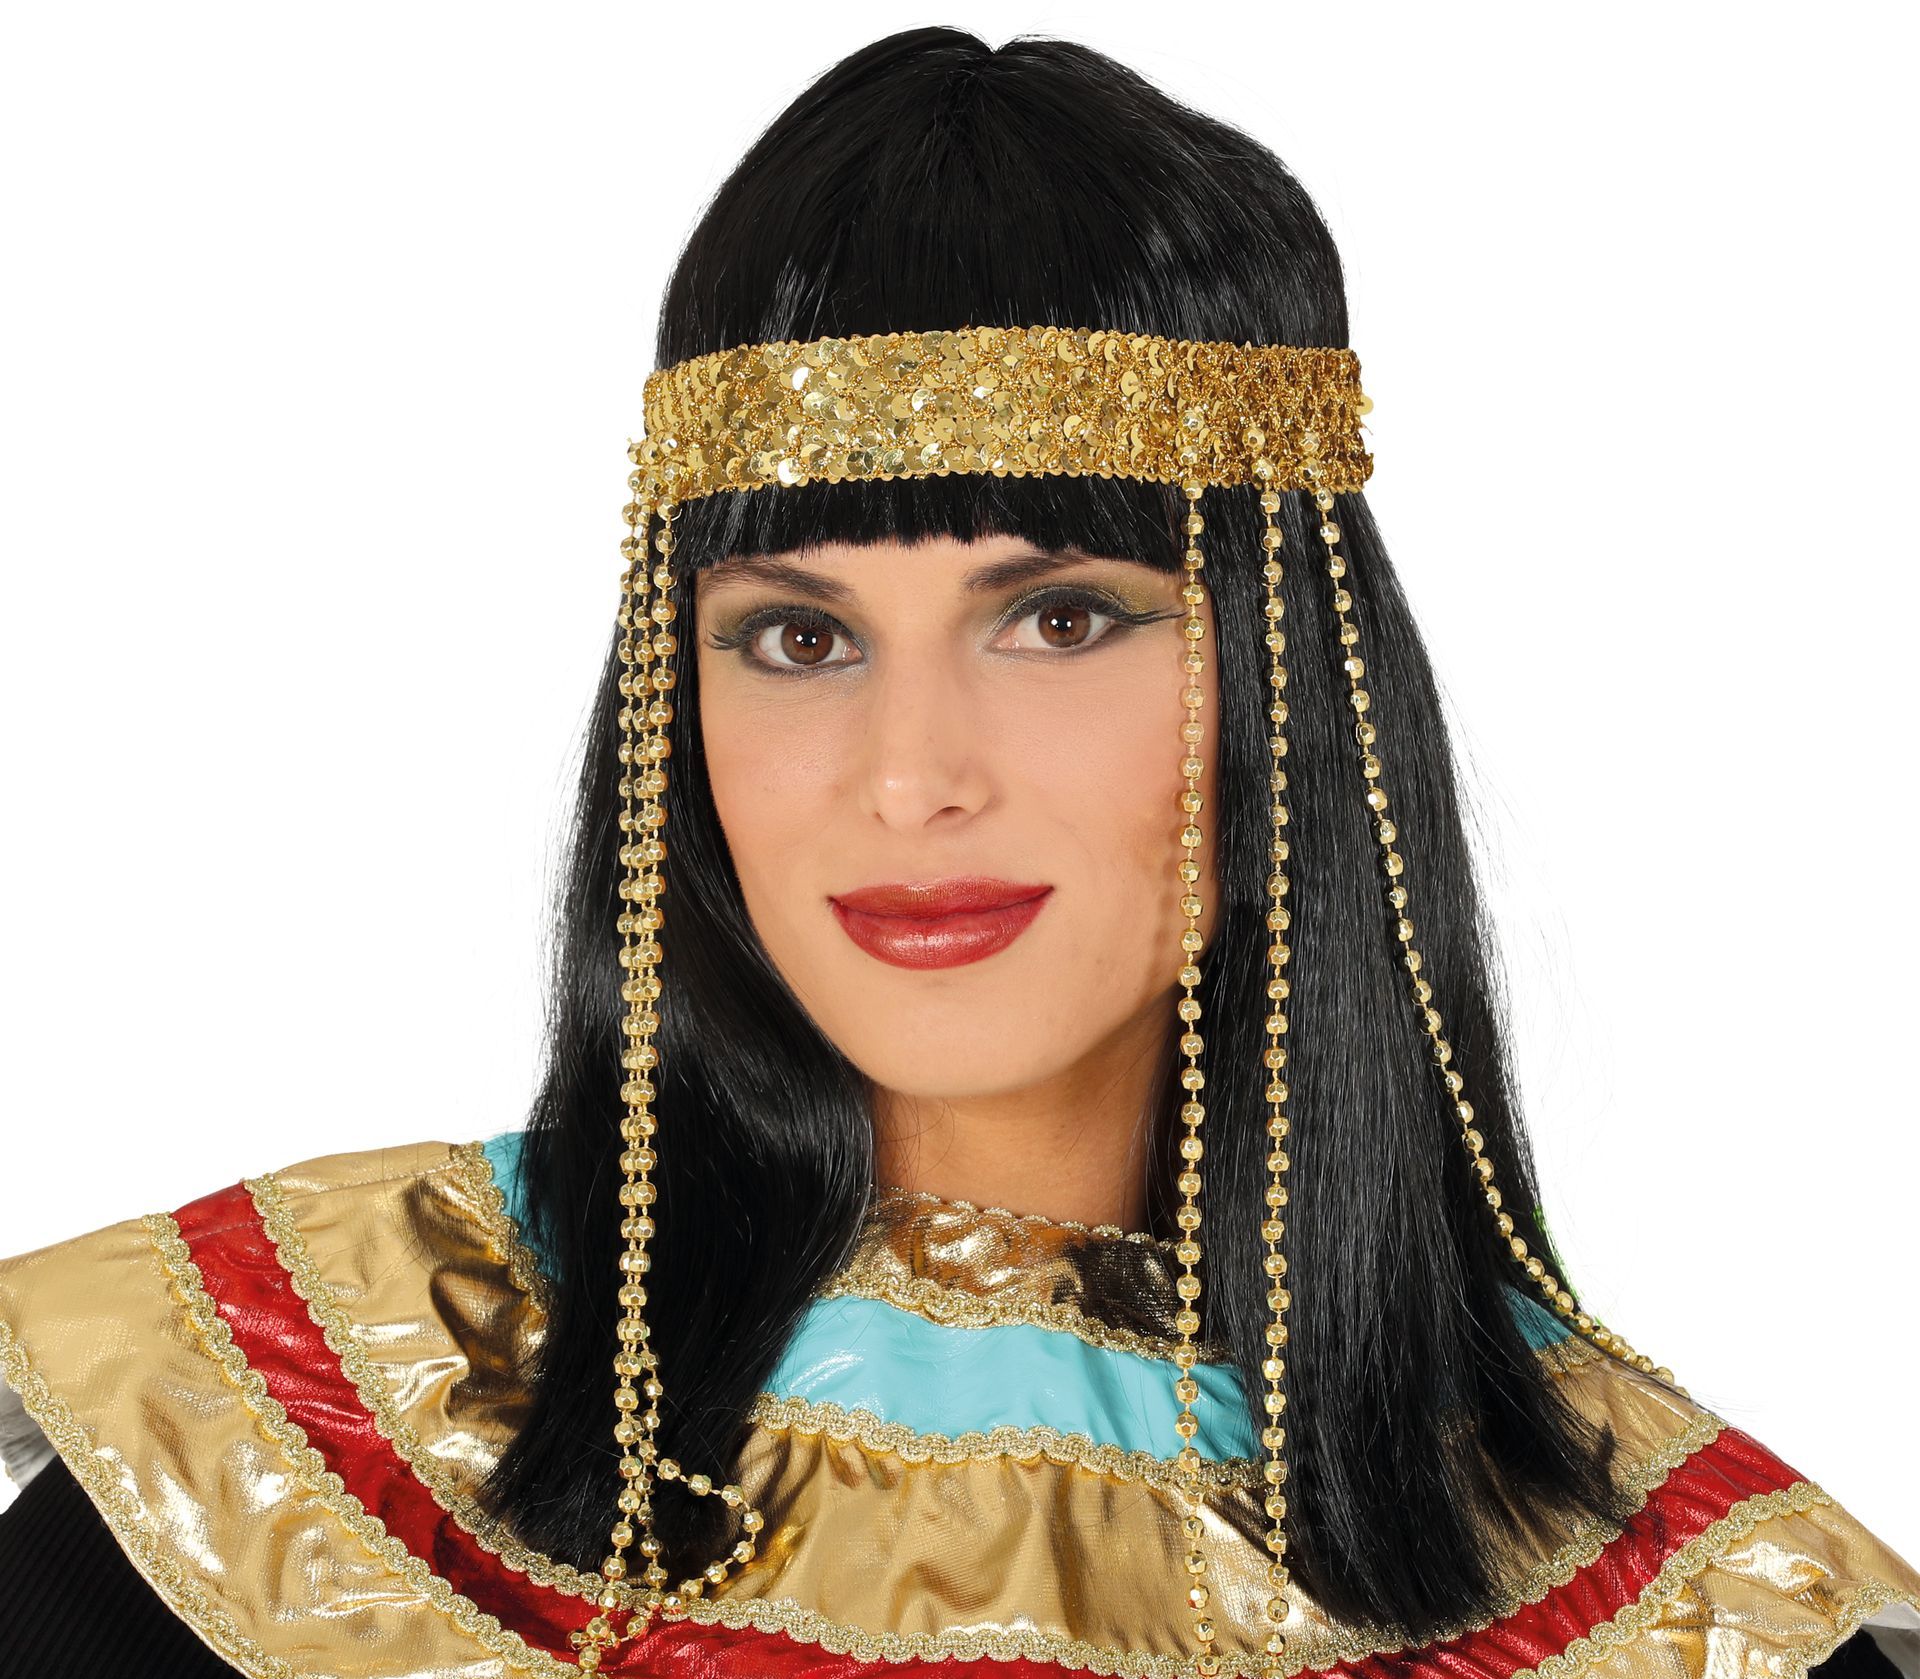 Cleopatra pruik met gouden hoofdband